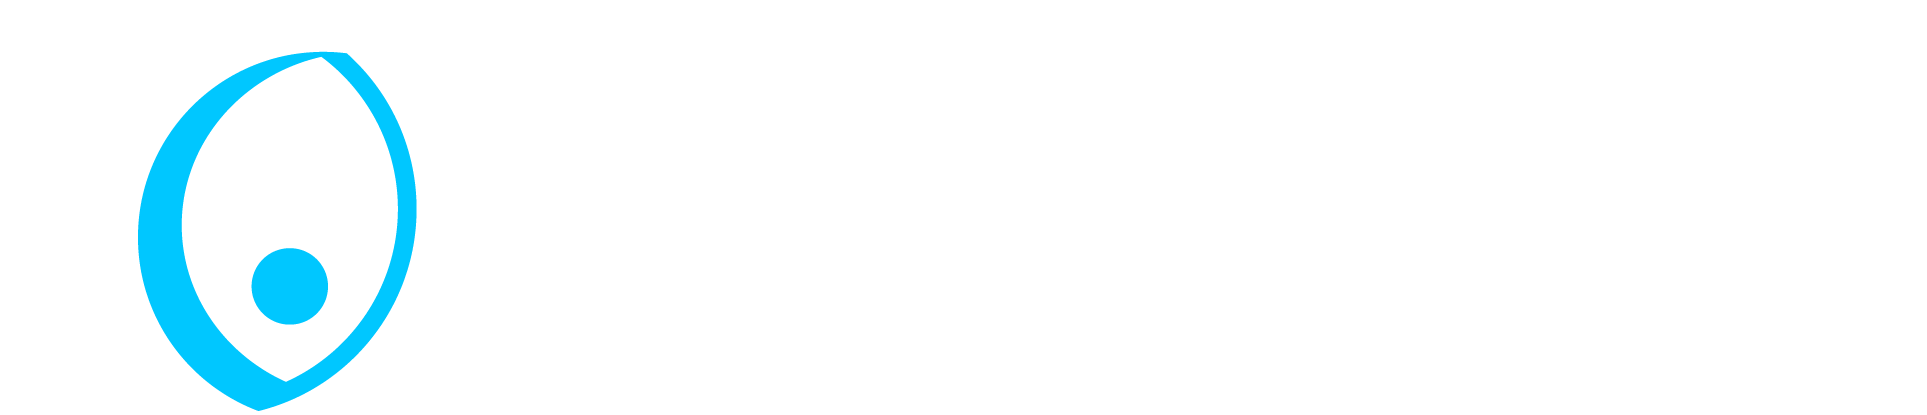 Vincent & Son Limited